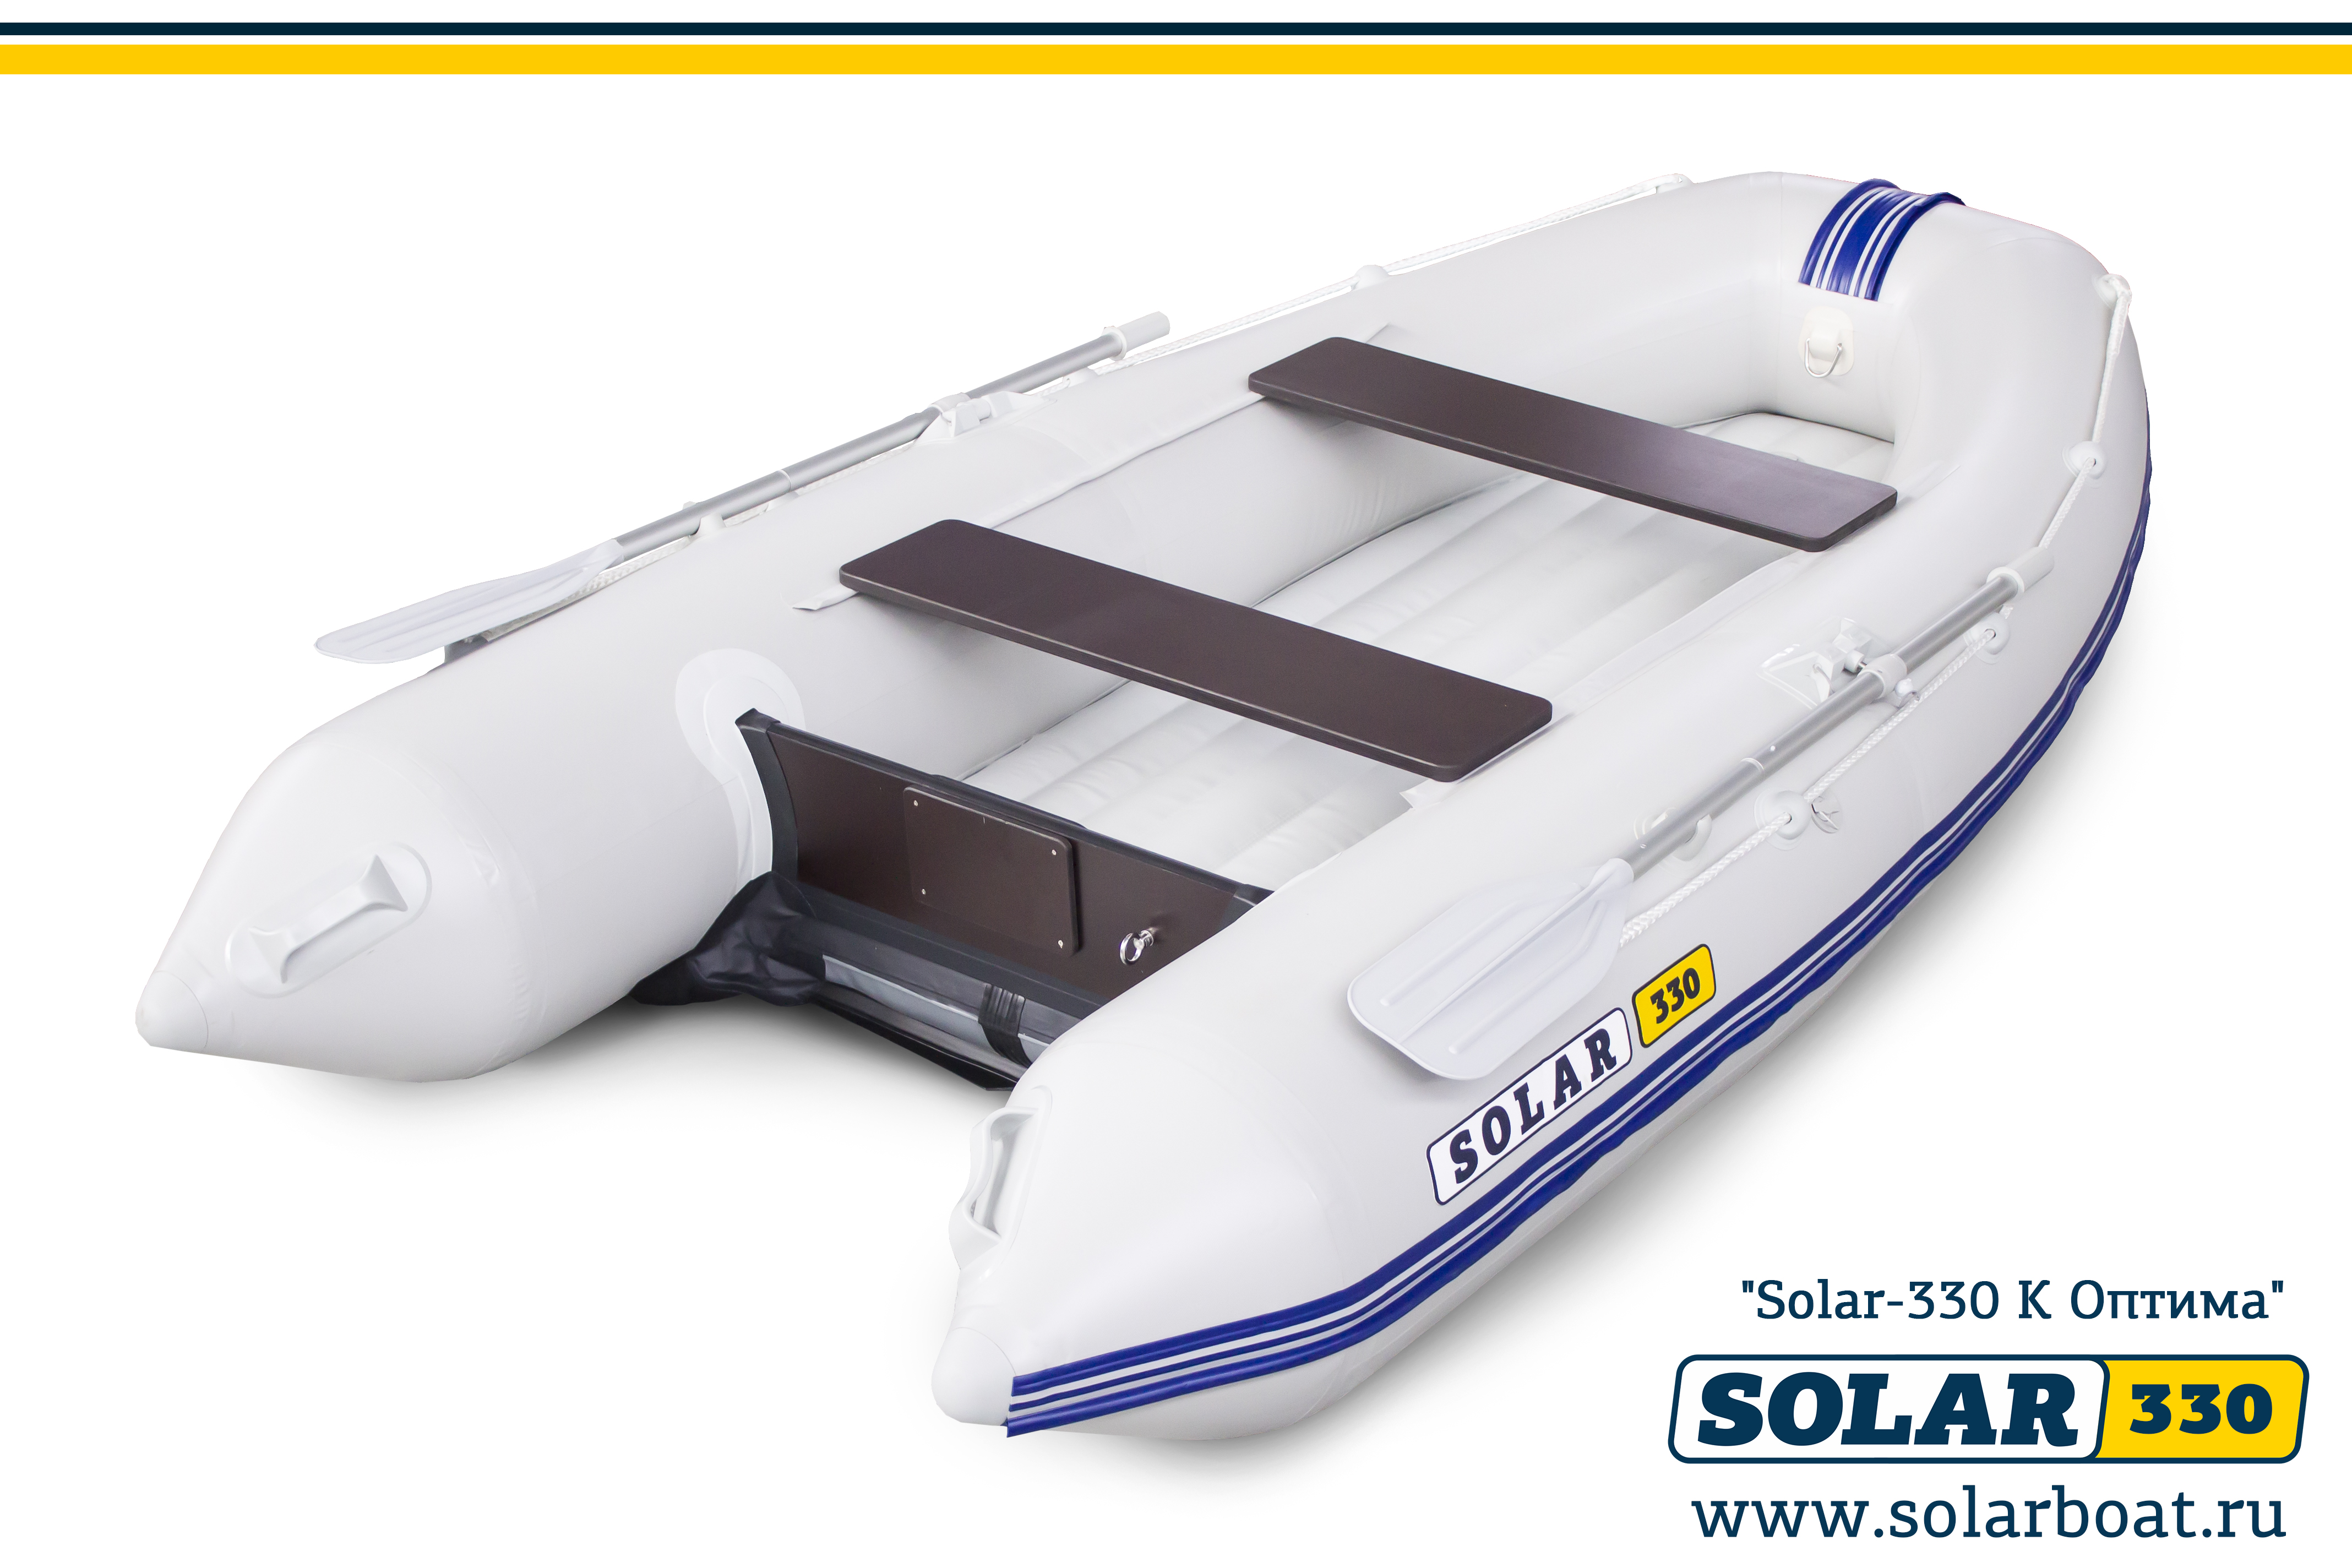 机动充气艇 SOLAR-330 K (Optima)